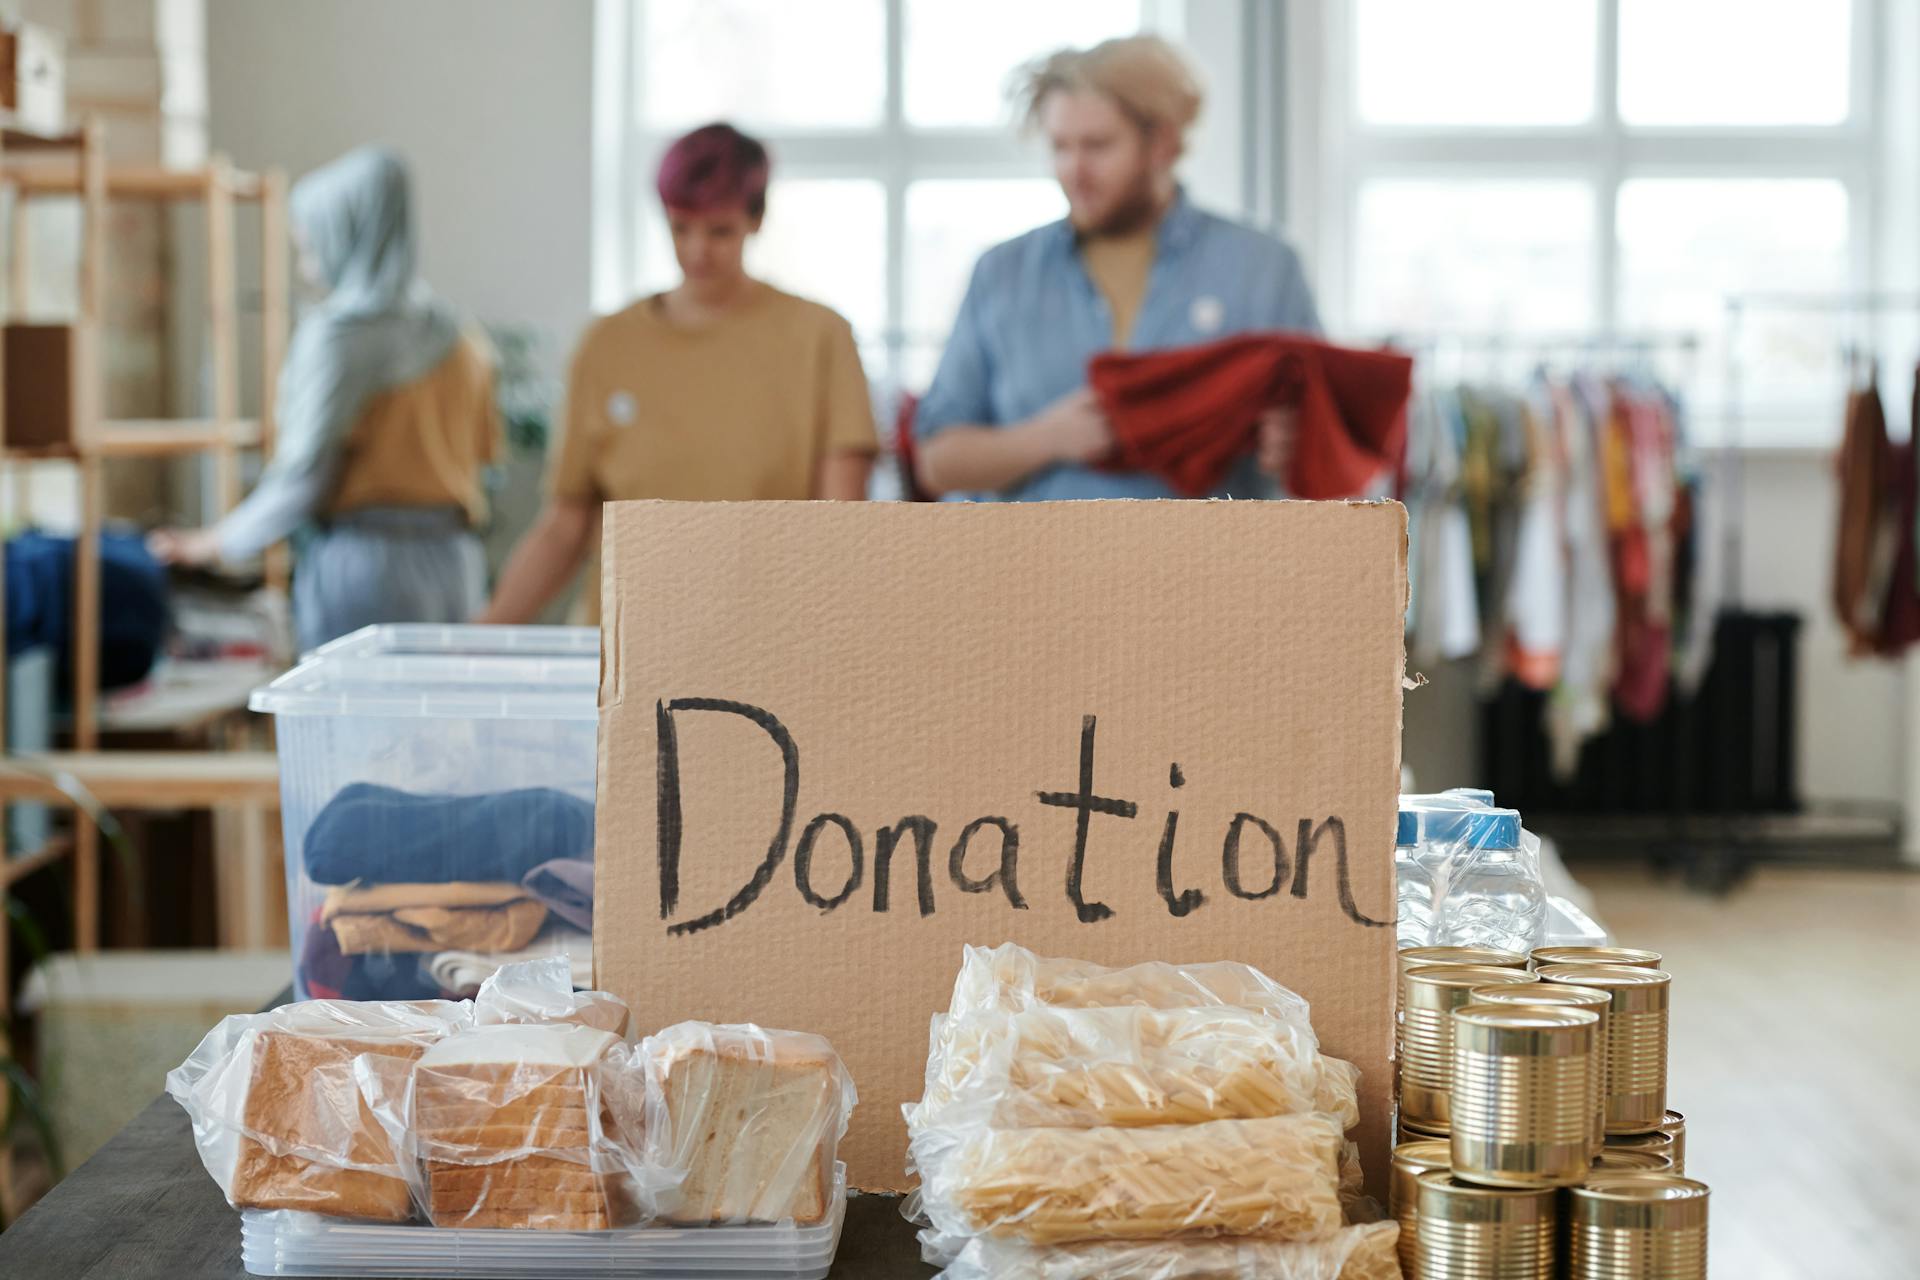 Boîtes de nourriture placées à côté d'une inscription en carton indiquant "Donation" | Source : Pexels